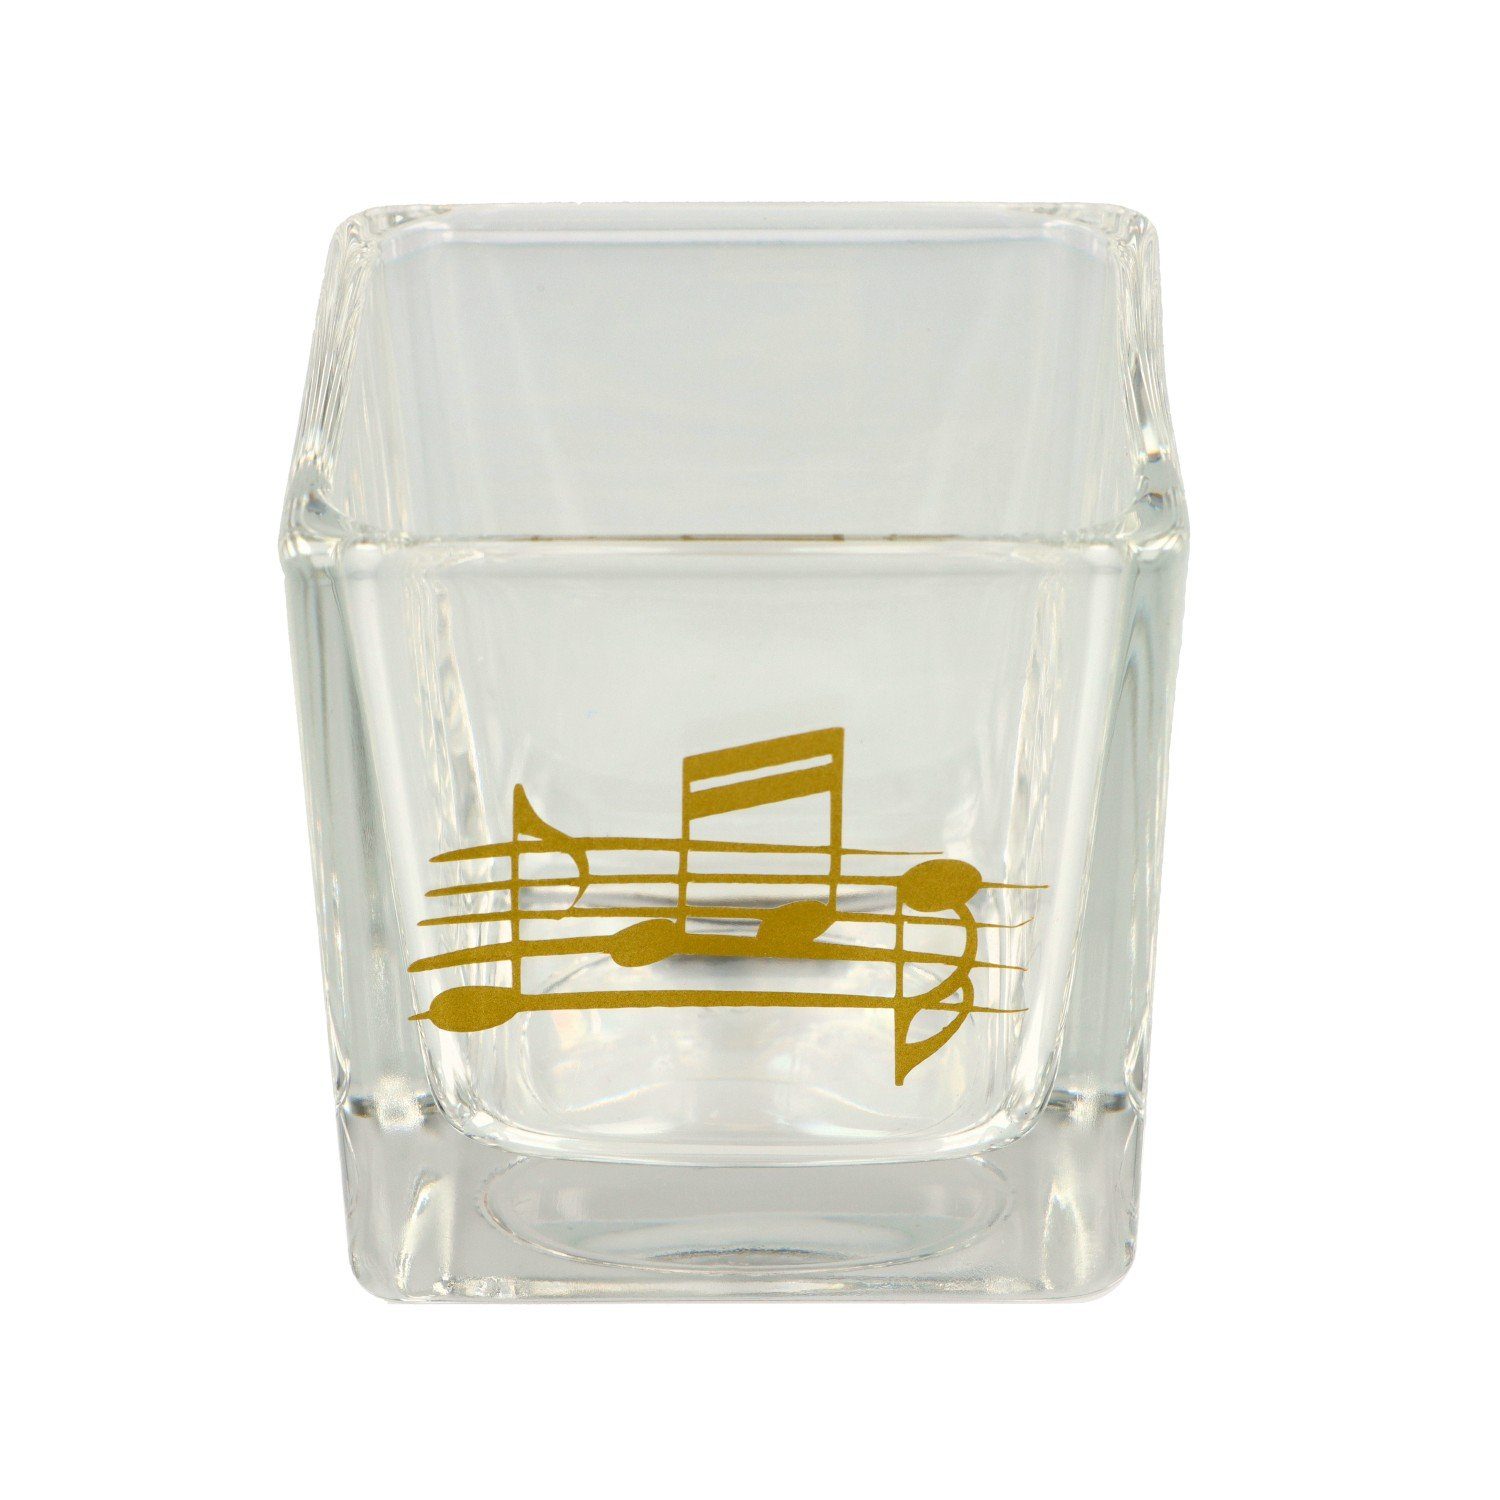 Notenlinie in mit Glas Musikboutique und Noten aus silber Teelichthalter,